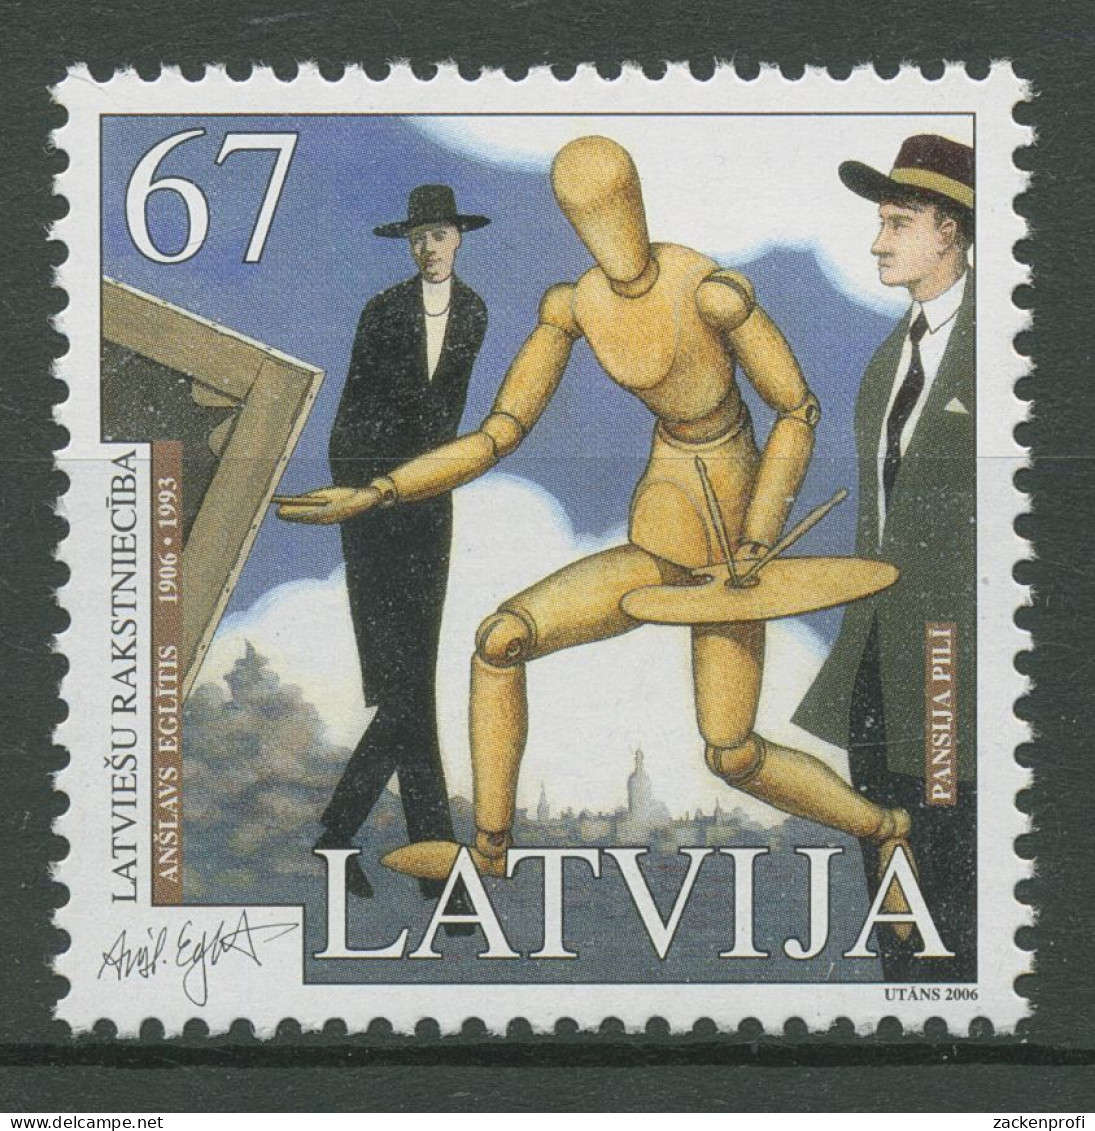 Lettland 2006 Schriftsteller Buchillustration 684 Postfrisch - Latvia